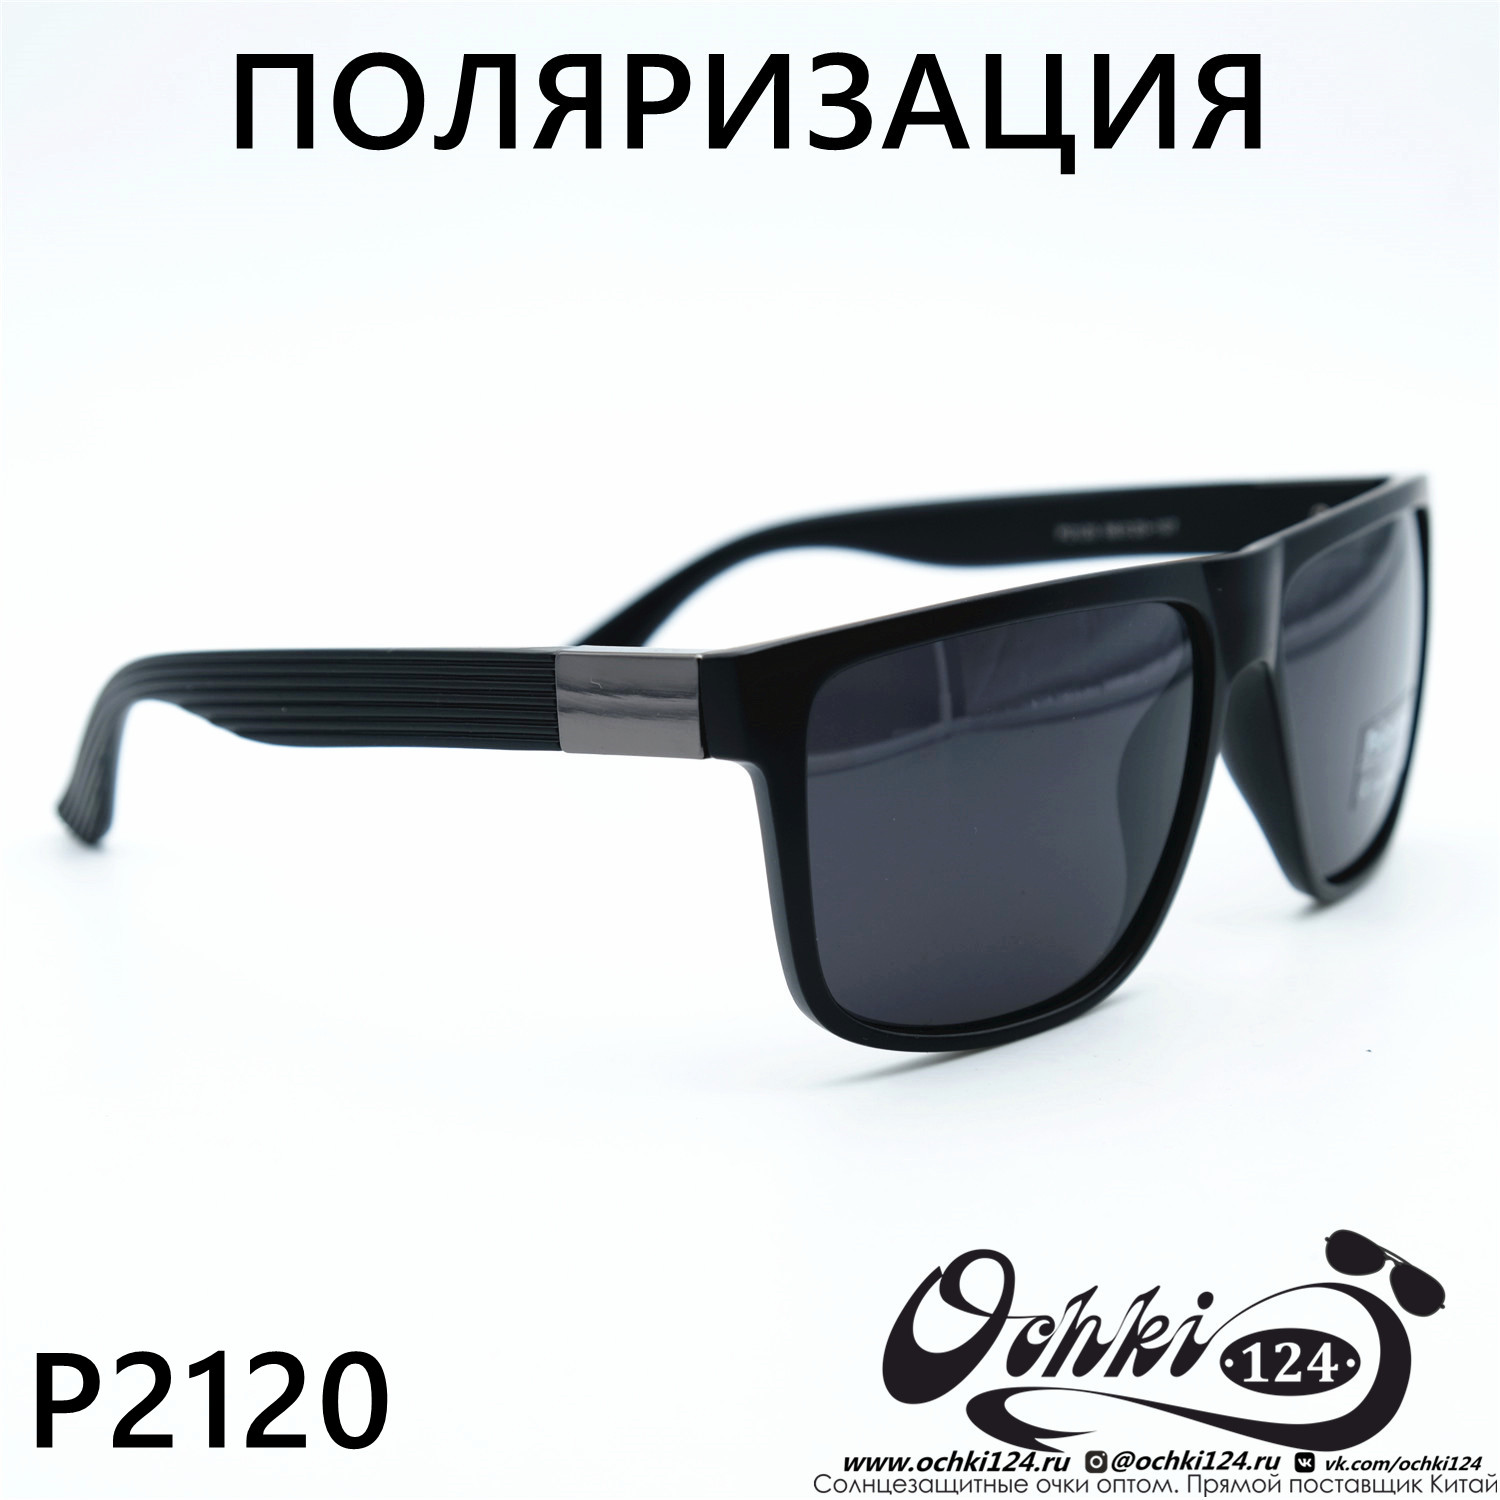  Солнцезащитные очки картинка 2023 Мужские Стандартные Polarized P2120-C3 